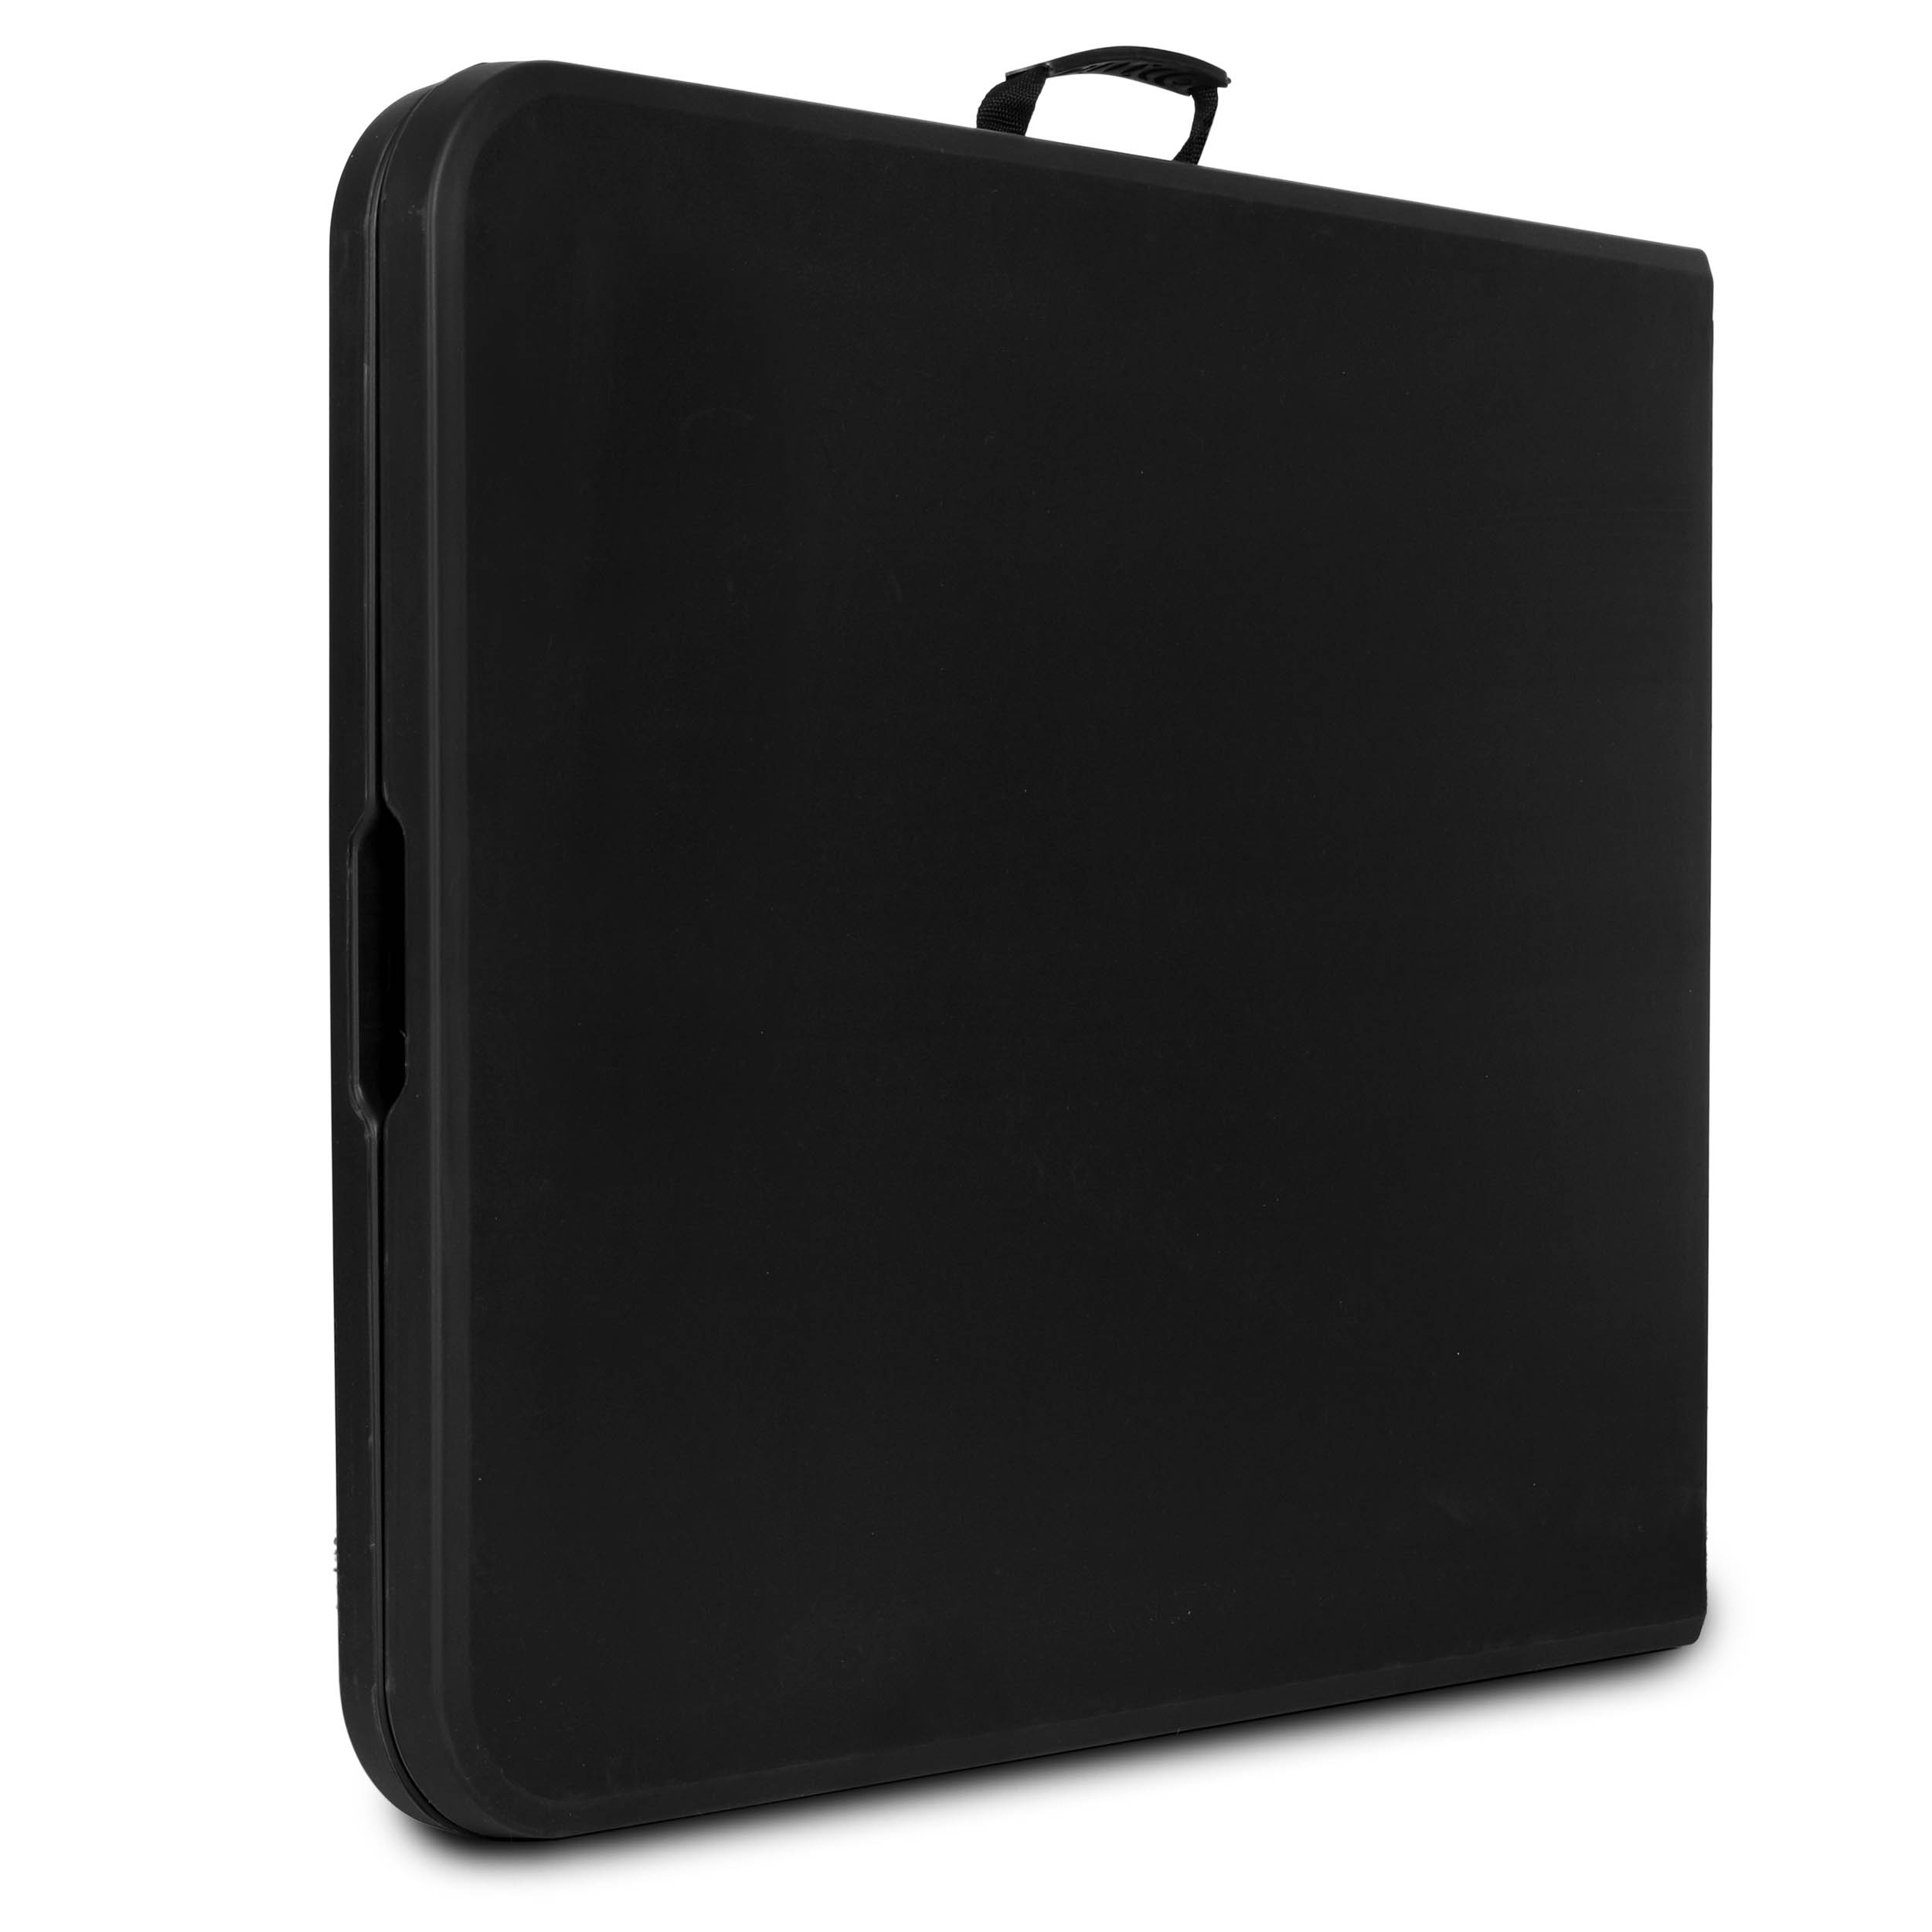 Stół cateringowy FETA BLACK bankietowy składany w walizkę 180 cm czarny